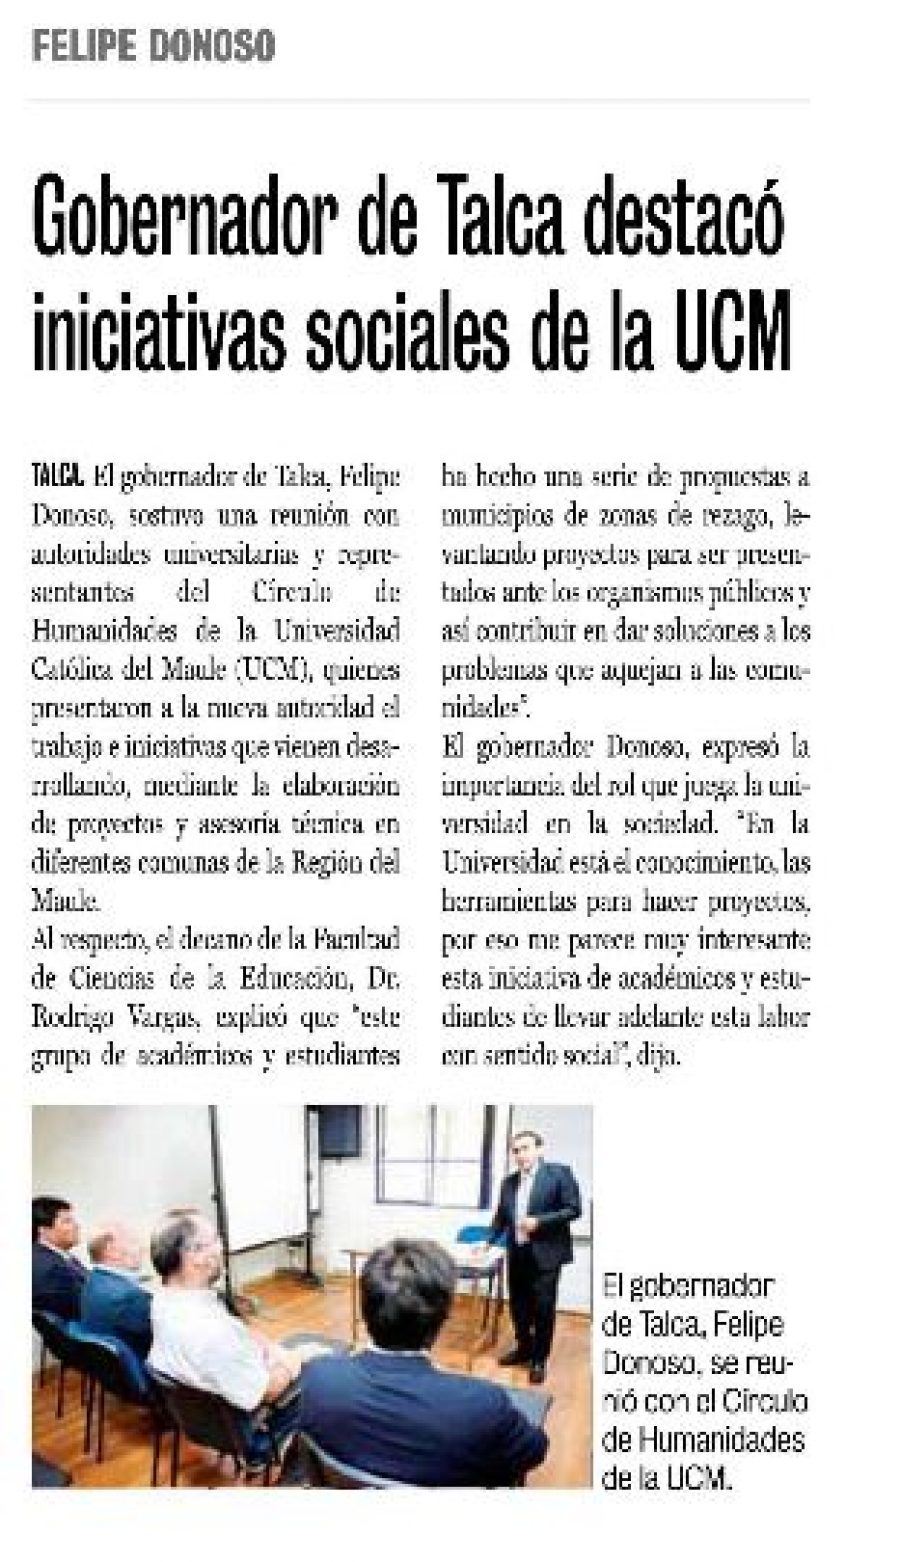 17 de marzo en Diario La Prensa: “Gobernador de Talca destacó iniciativas sociales de la UCM”